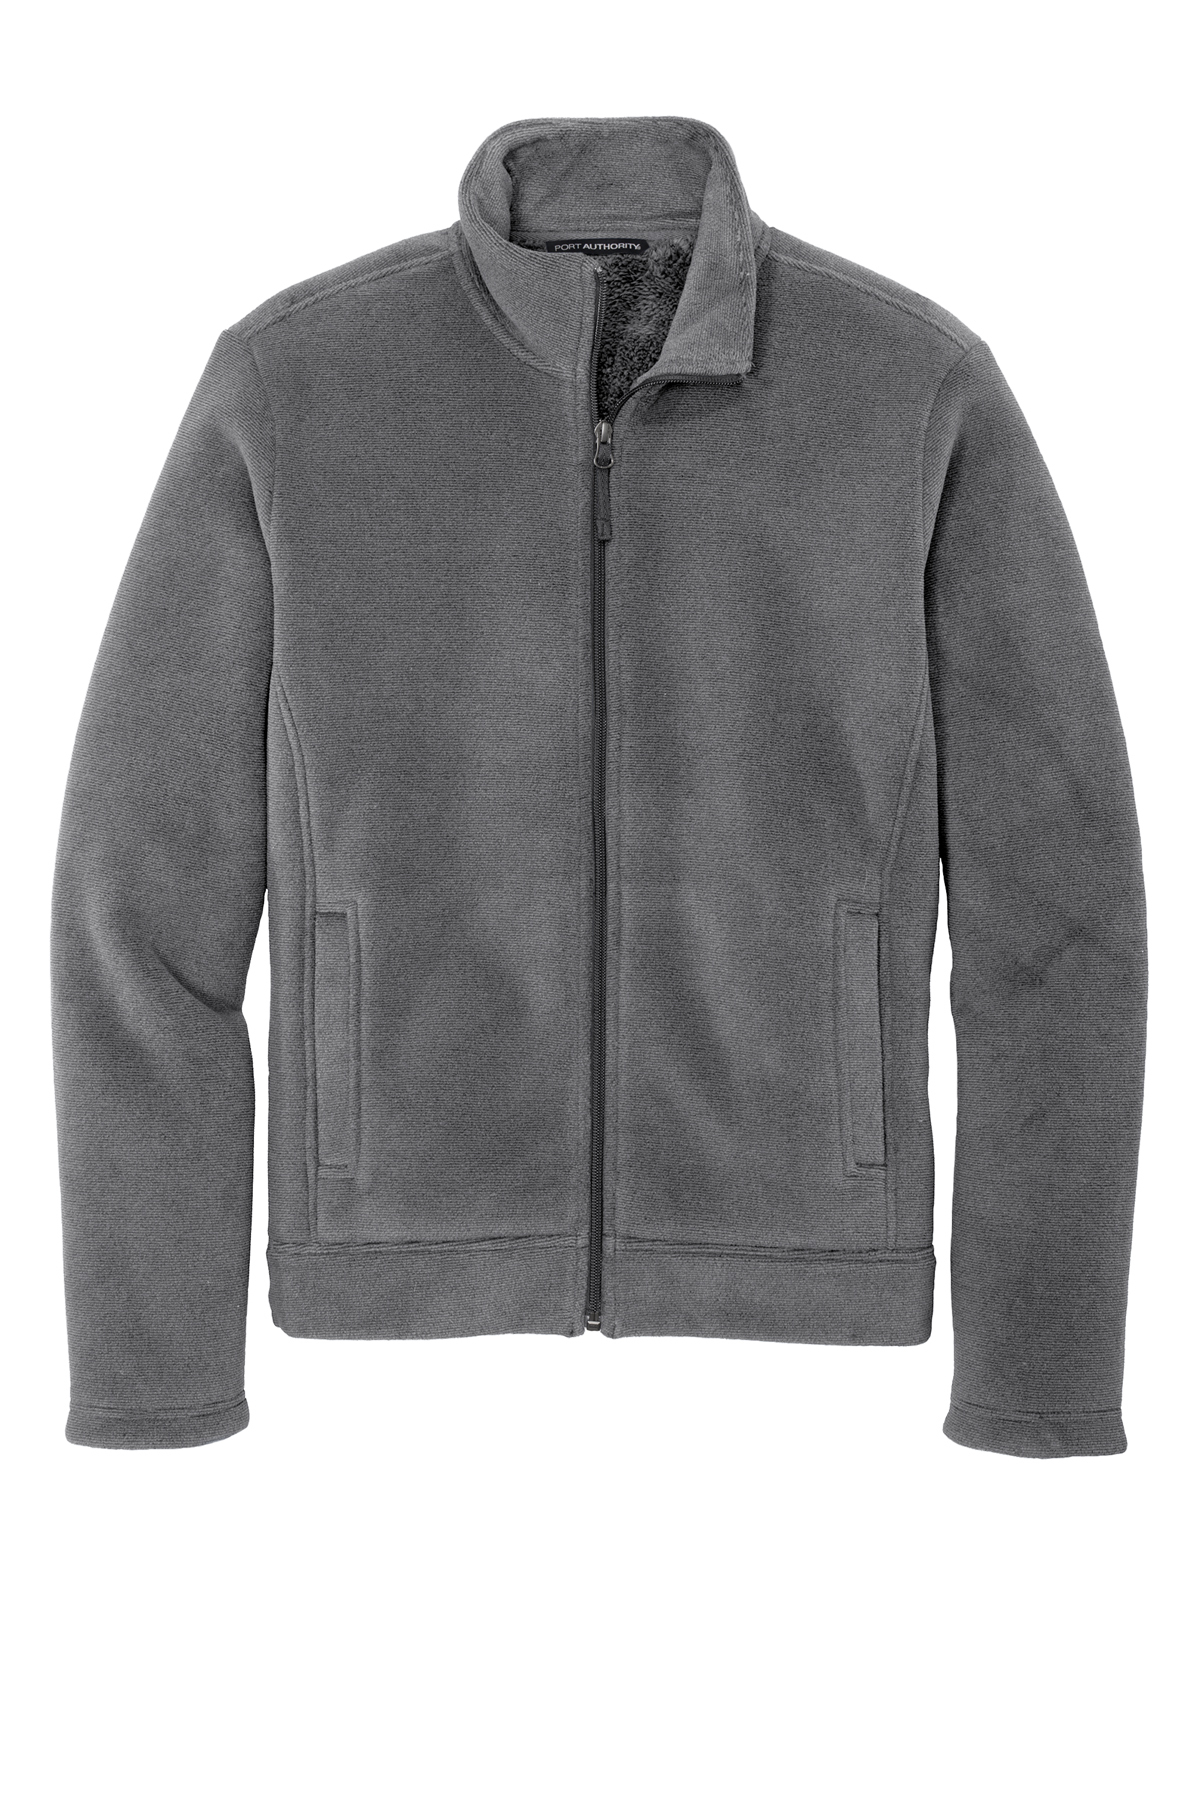 Port Authority Ultra Warm Brushed Fleece Jacket | Product | Port Authority